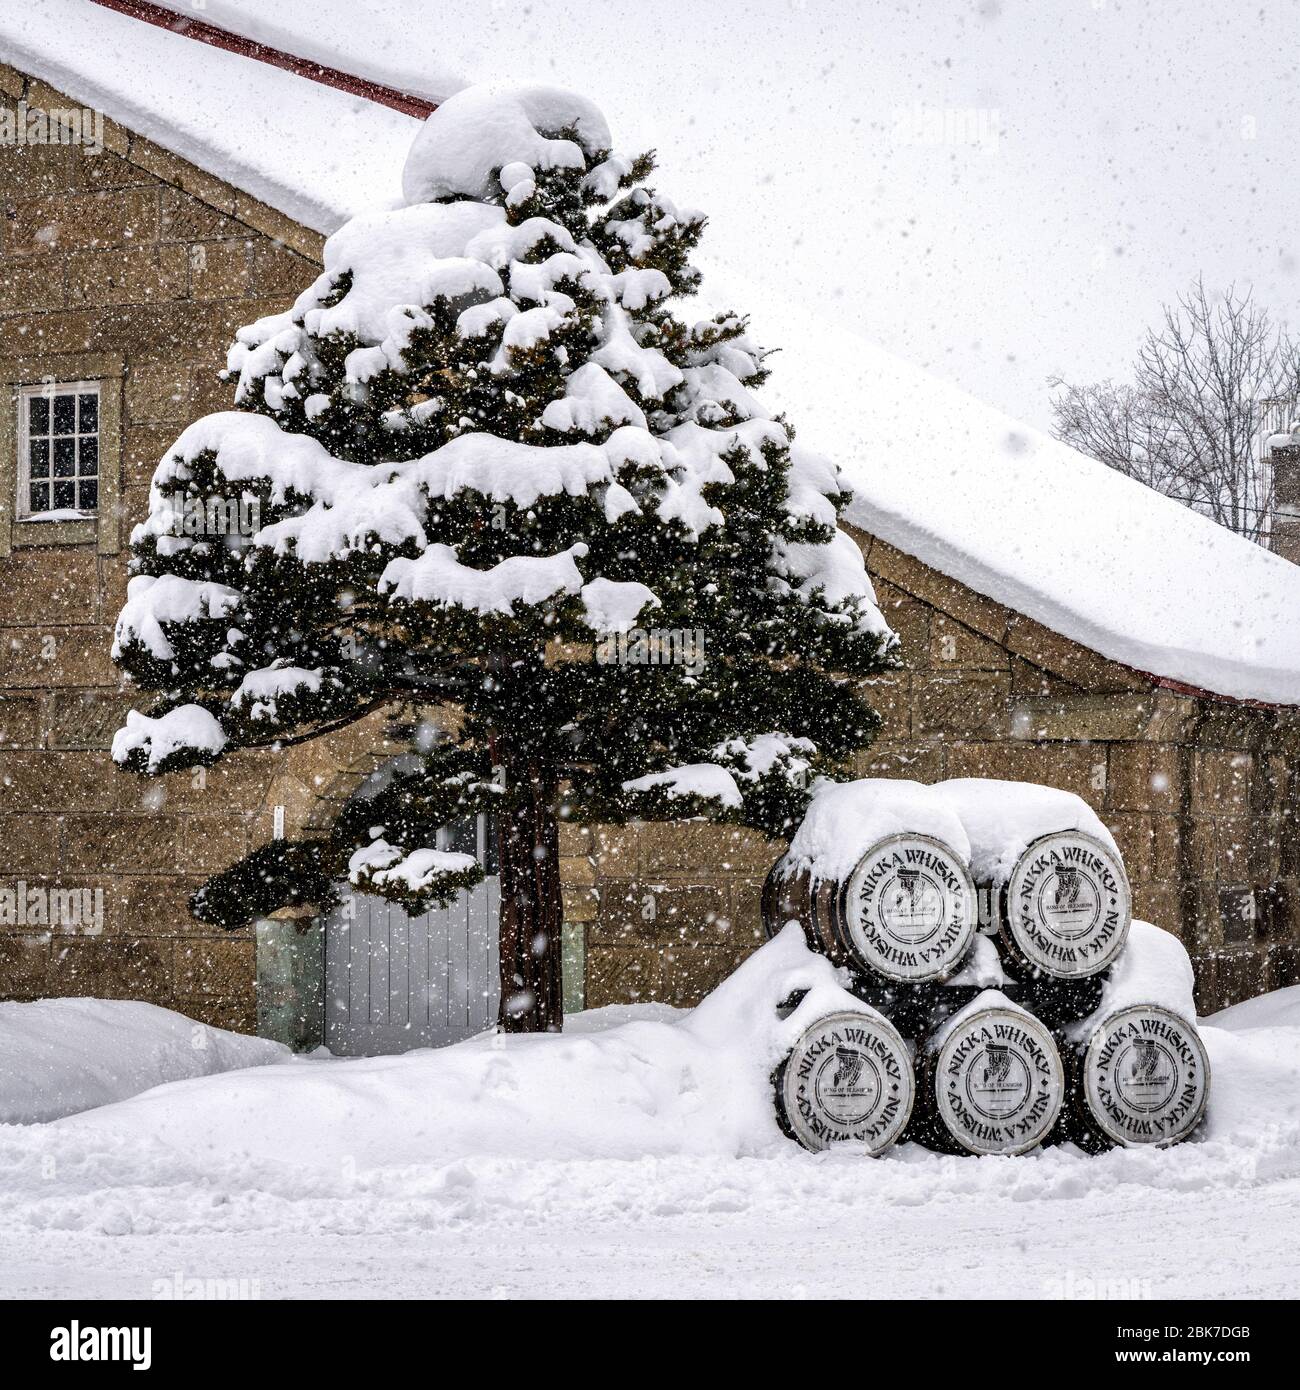 Distillerie Nikka dans la neige, Hokkaido, Japon Banque D'Images